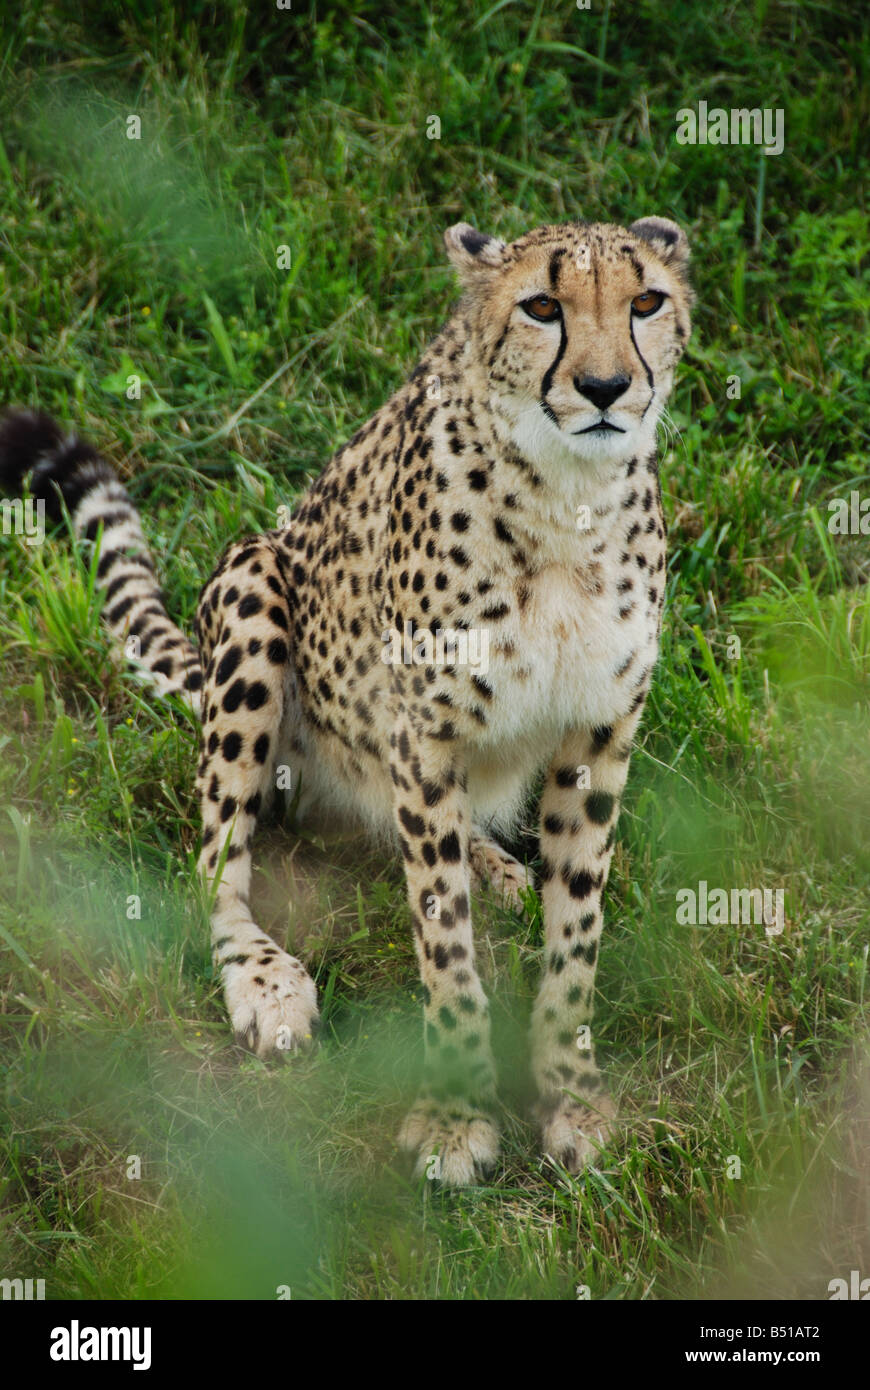 A captive cheetah in Toronto Ontario Canada Stock Photo